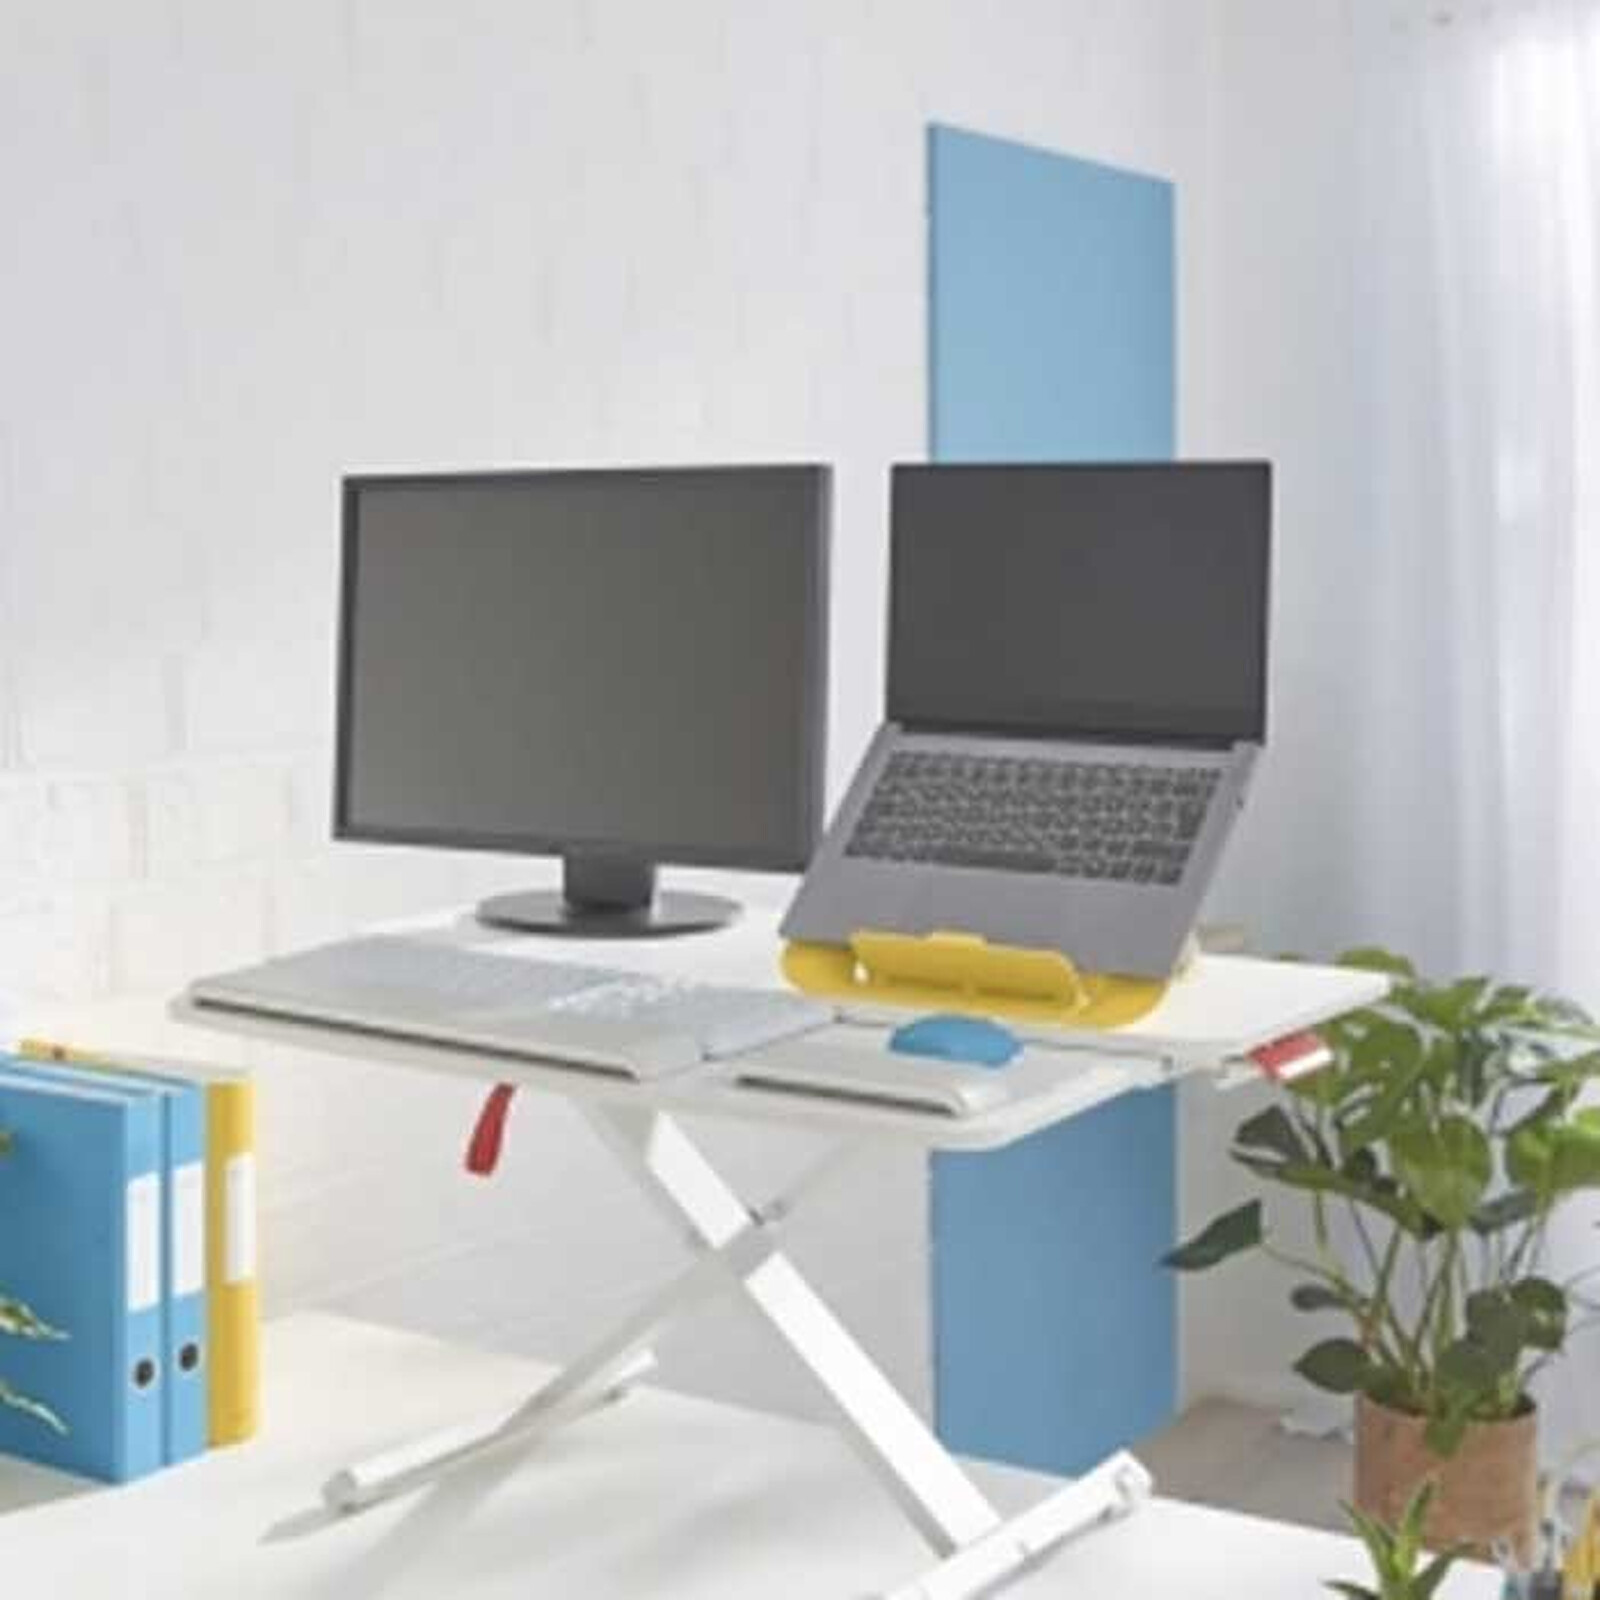 REKT R-Desk Max 160 - Meuble ordinateur - Garantie 3 ans LDLC